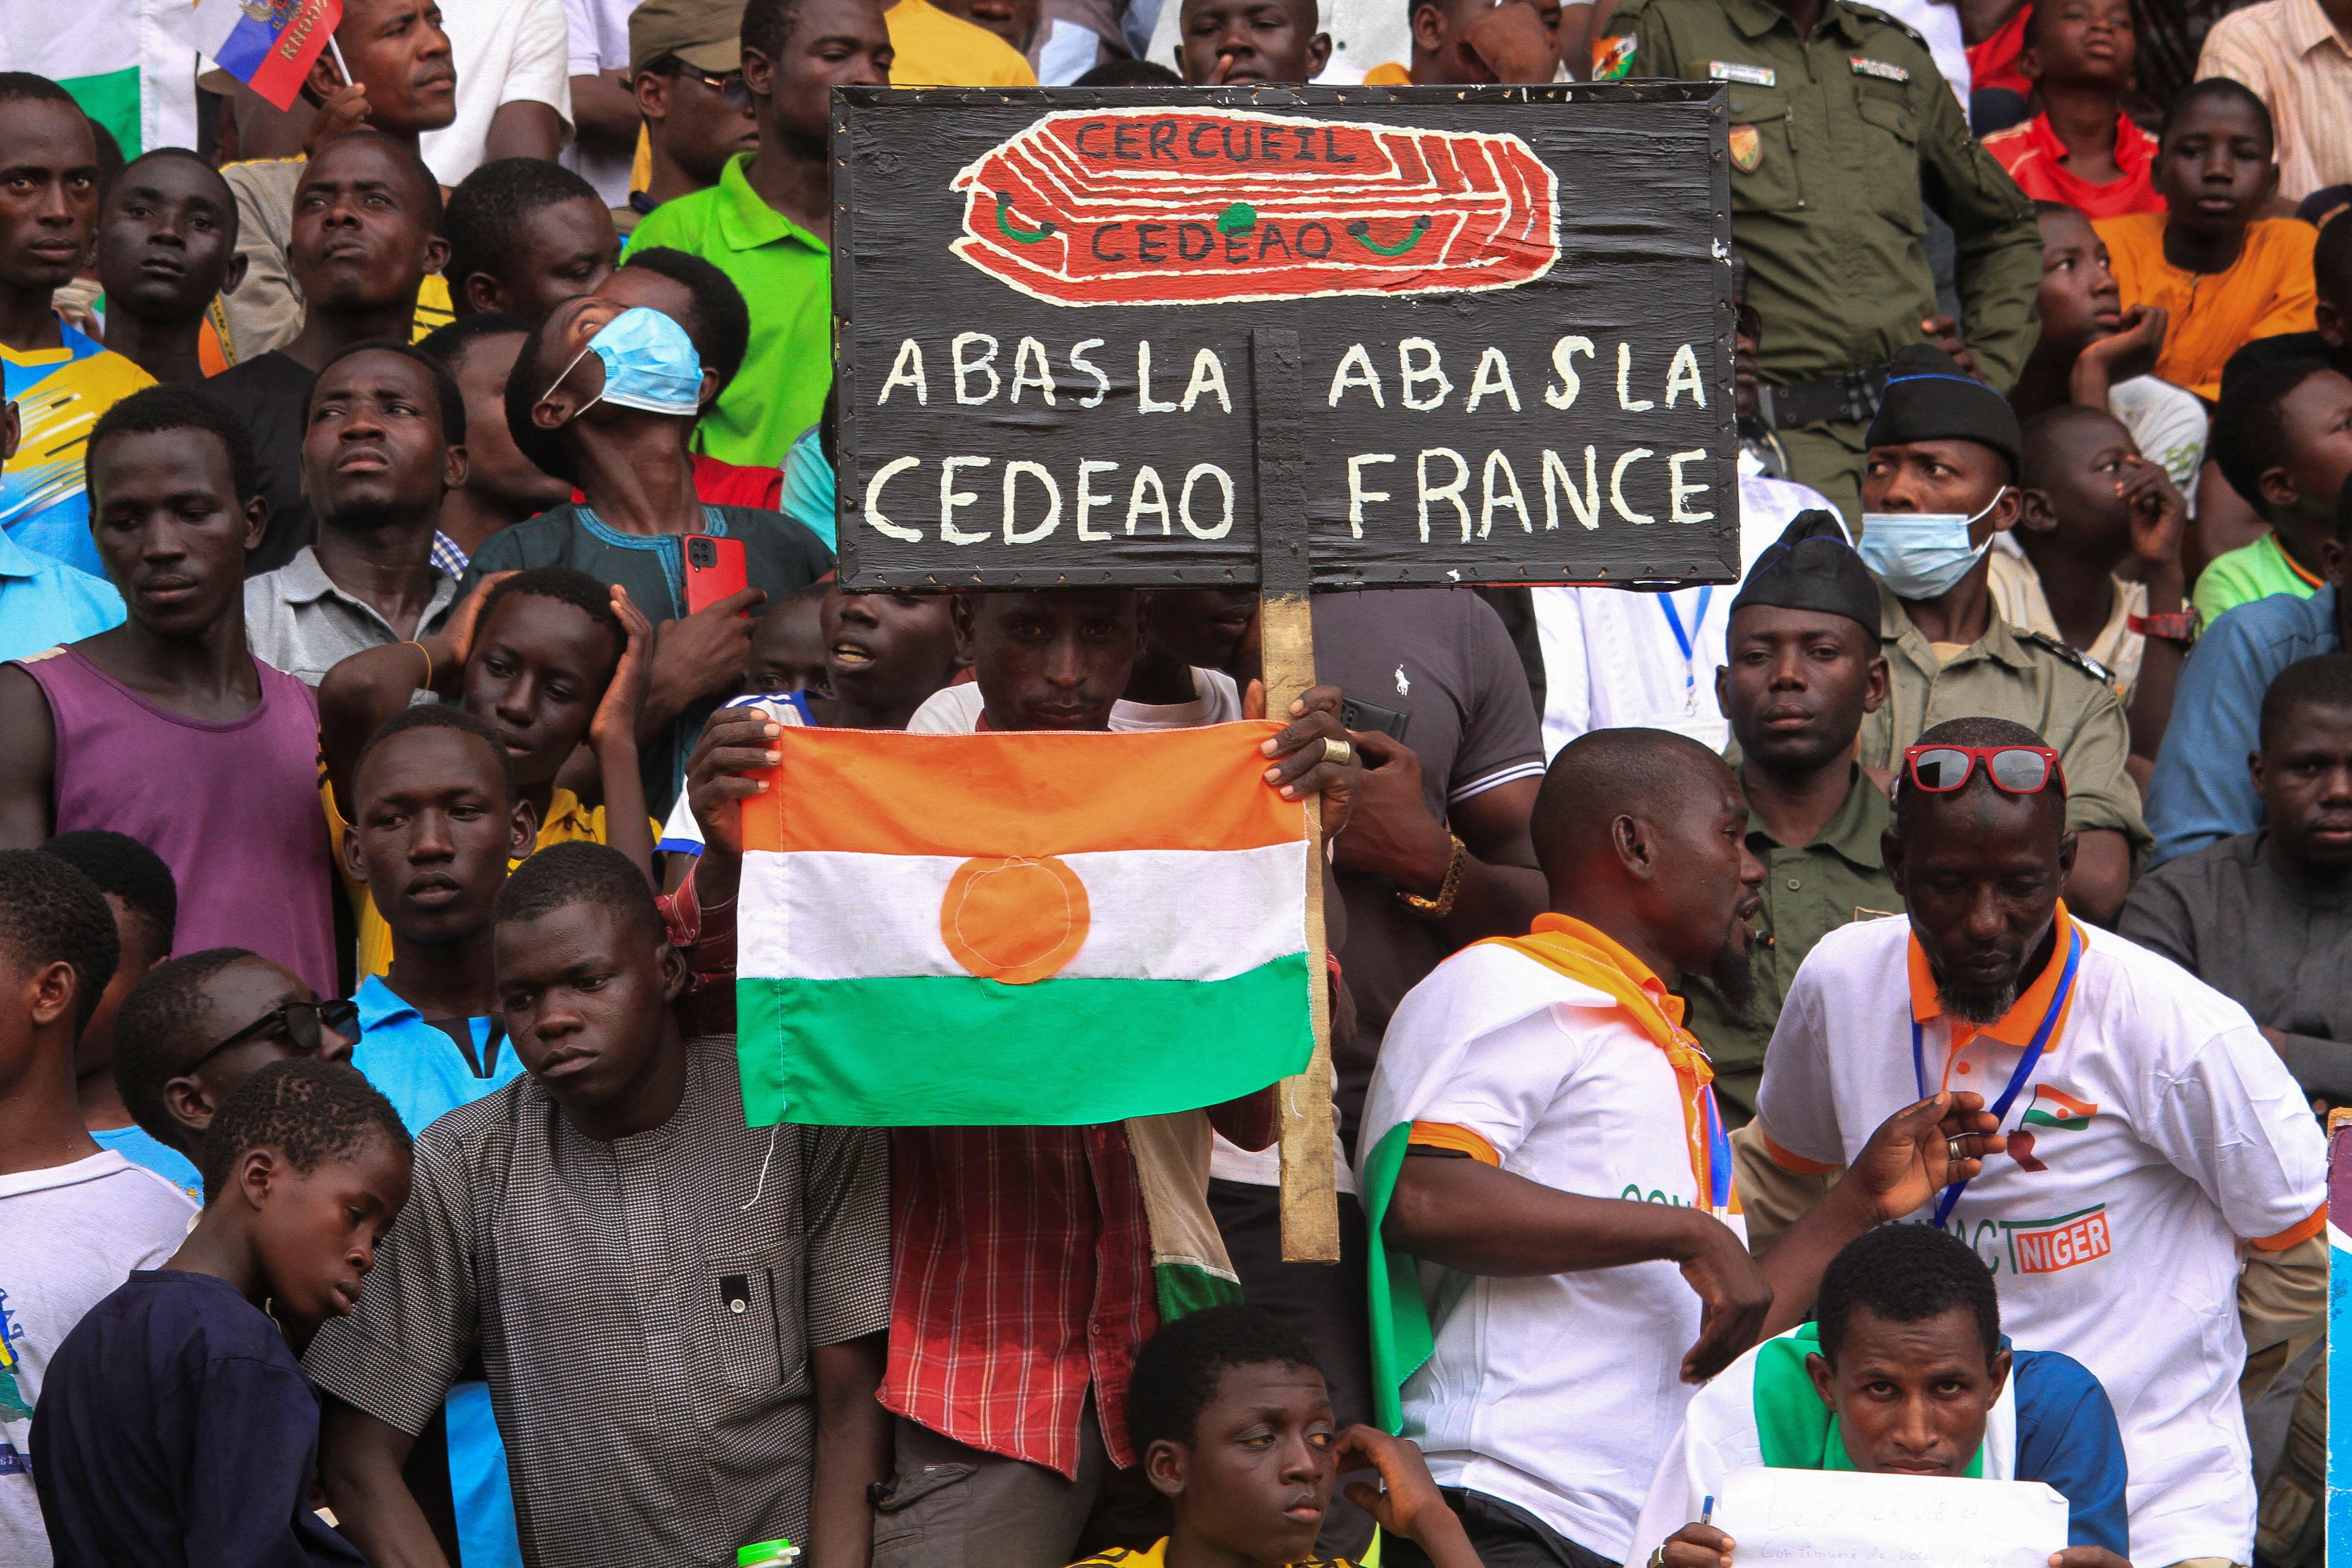 Nigerinos se reúnen un mes después del golpe, en apoyo a los soldados golpistas y para exigir la salida del embajador francés, en la capital Niamey este 26 de agosto de 2023. El cartel señala "Abajo la CEDEAO, abajo Francia" (REUTERS/Mahamadou Hamidou)